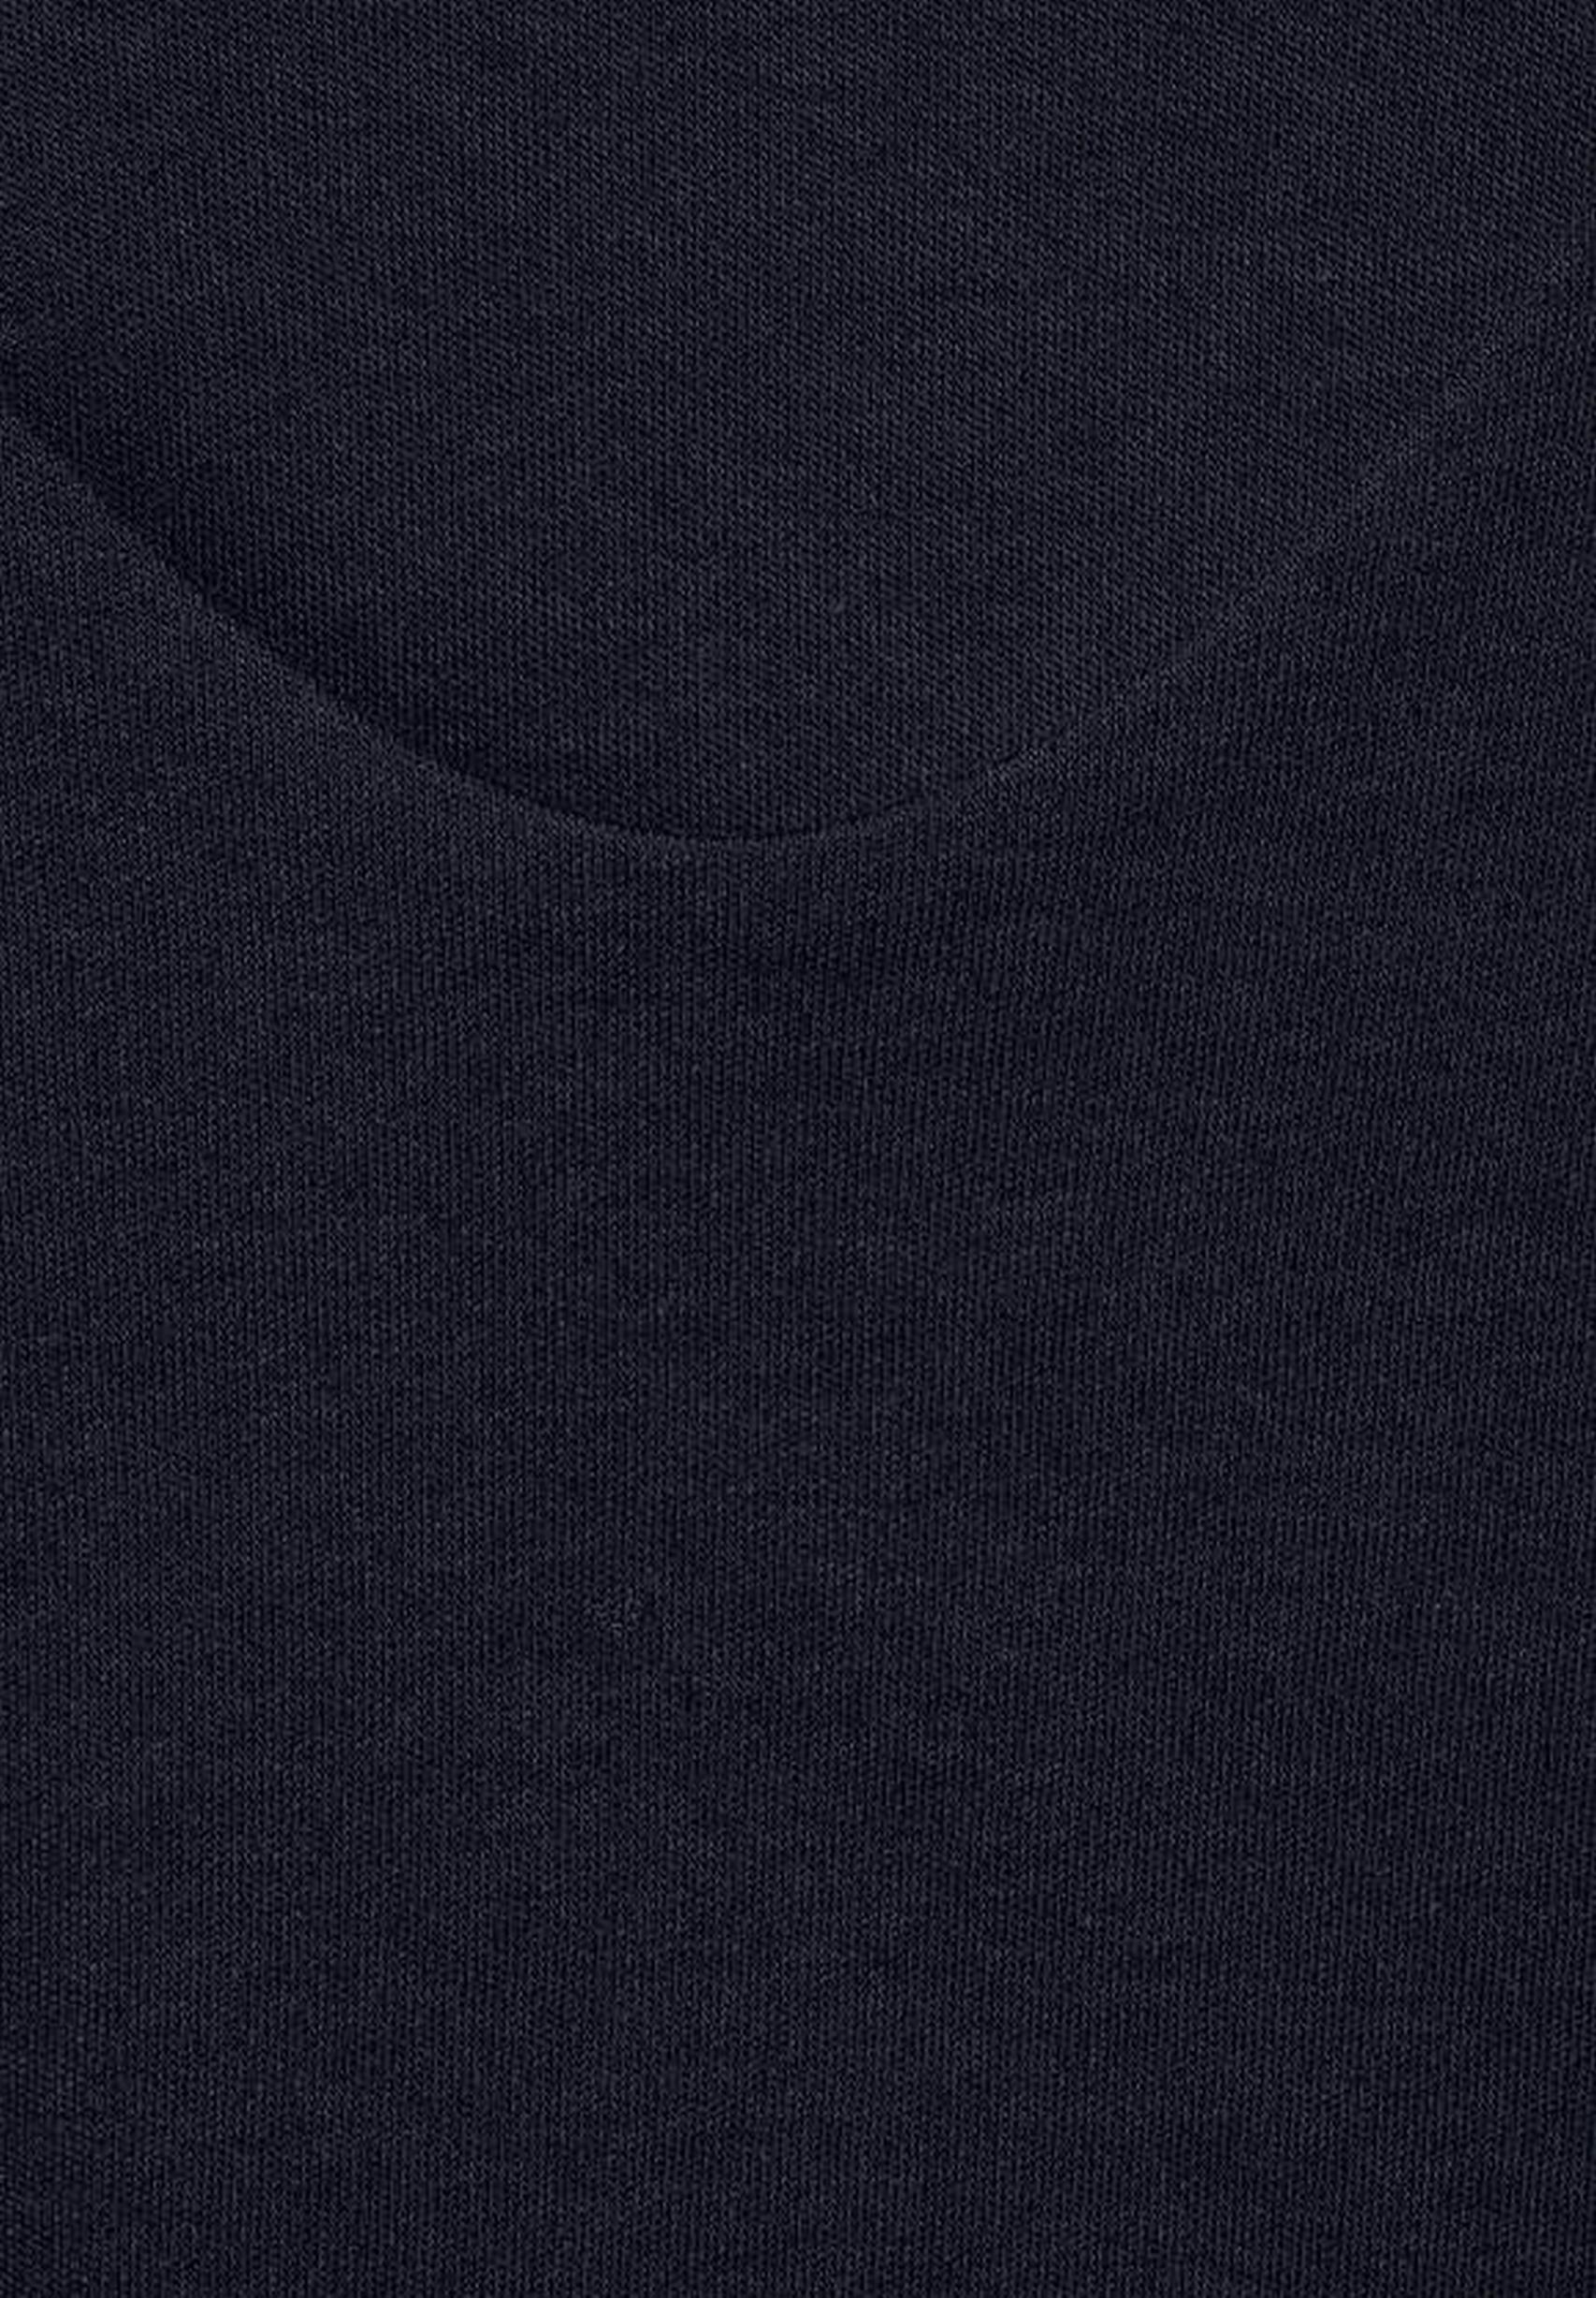 Modisches Shirt Palmira aus der Kollektion von Street One in deep blue -  317665